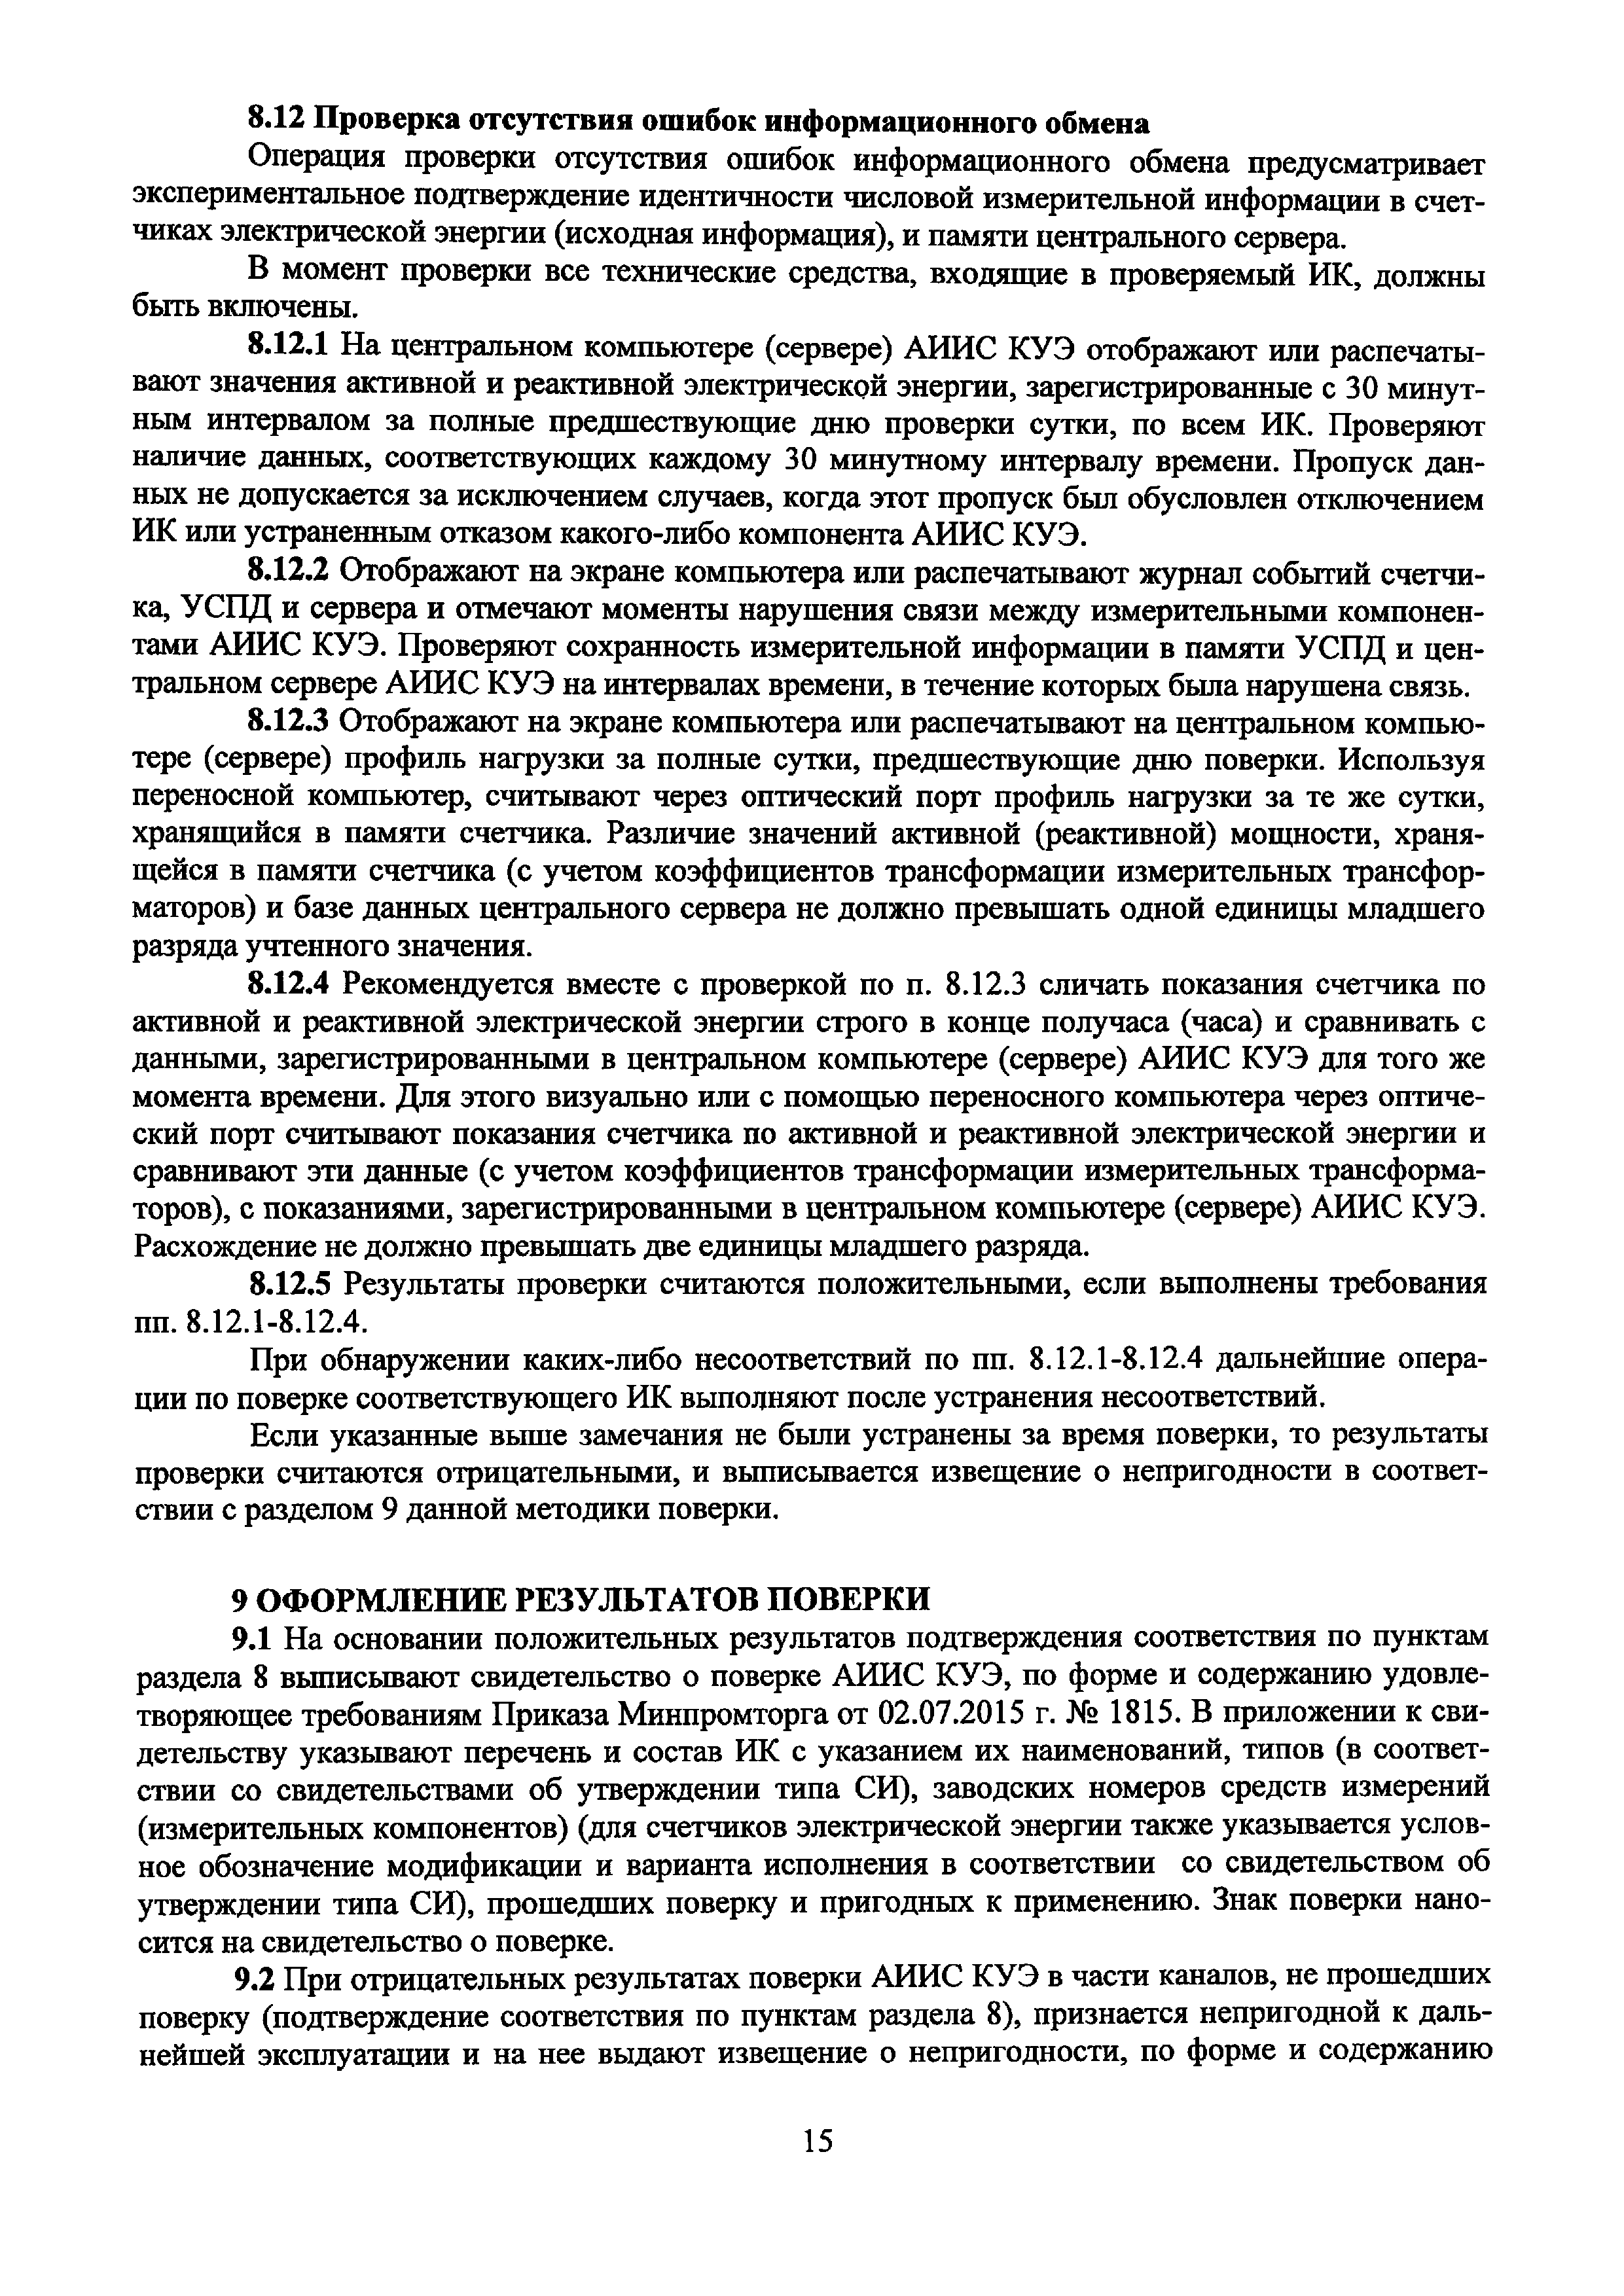 МП ЭПР-216-2019